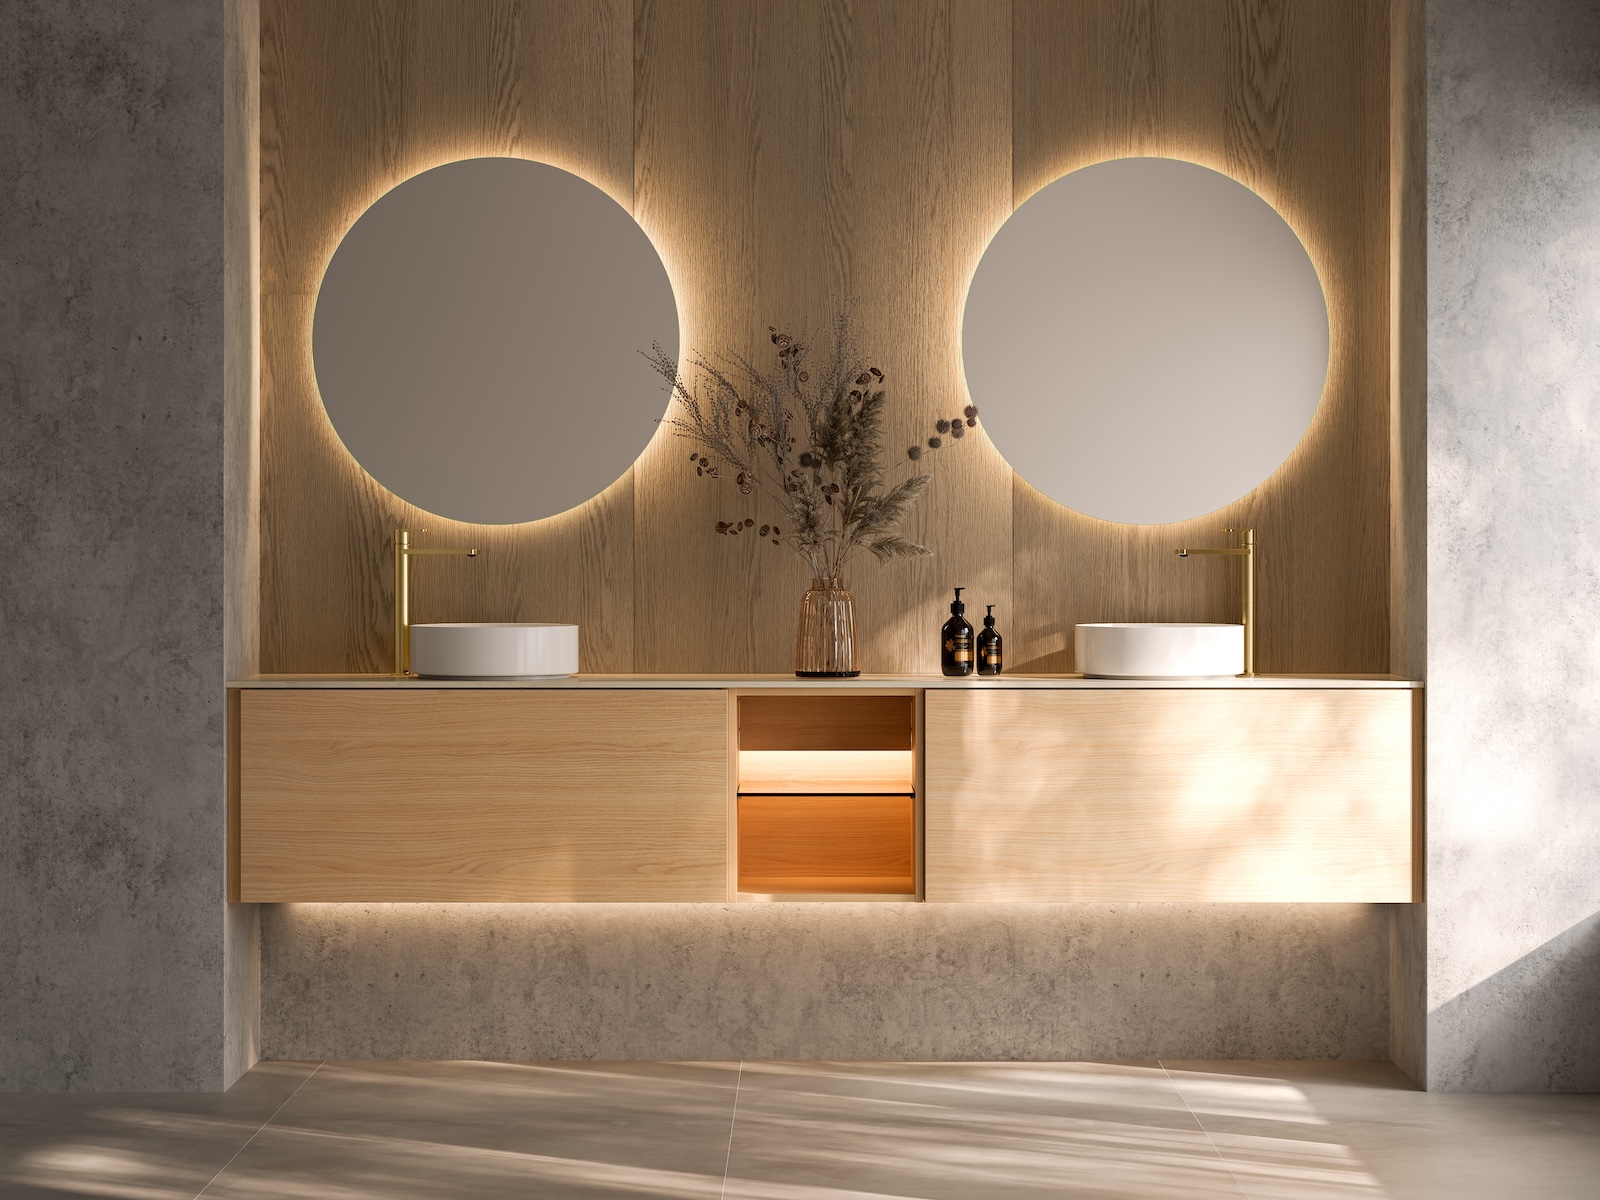 TEMAL kylpyhuone, Design, skandinaavinen kylpyhuone, iso allaskaappi, pyöreä peili,